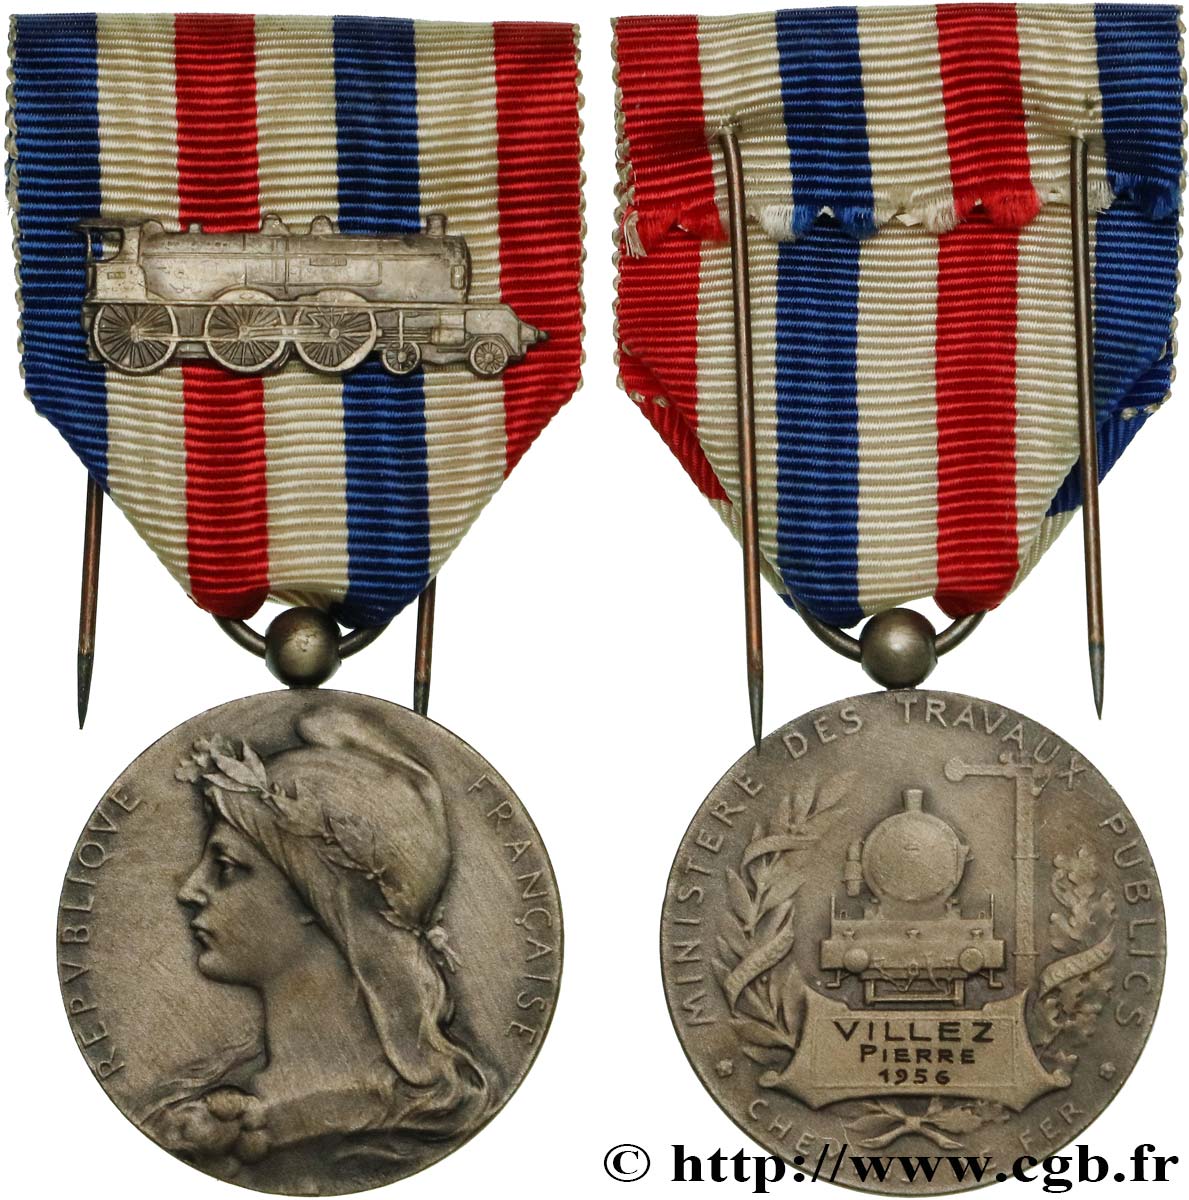 VIERTE FRANZOSISCHE REPUBLIK Médaille des Chemins de Fer, Ministère des travaux publics SS